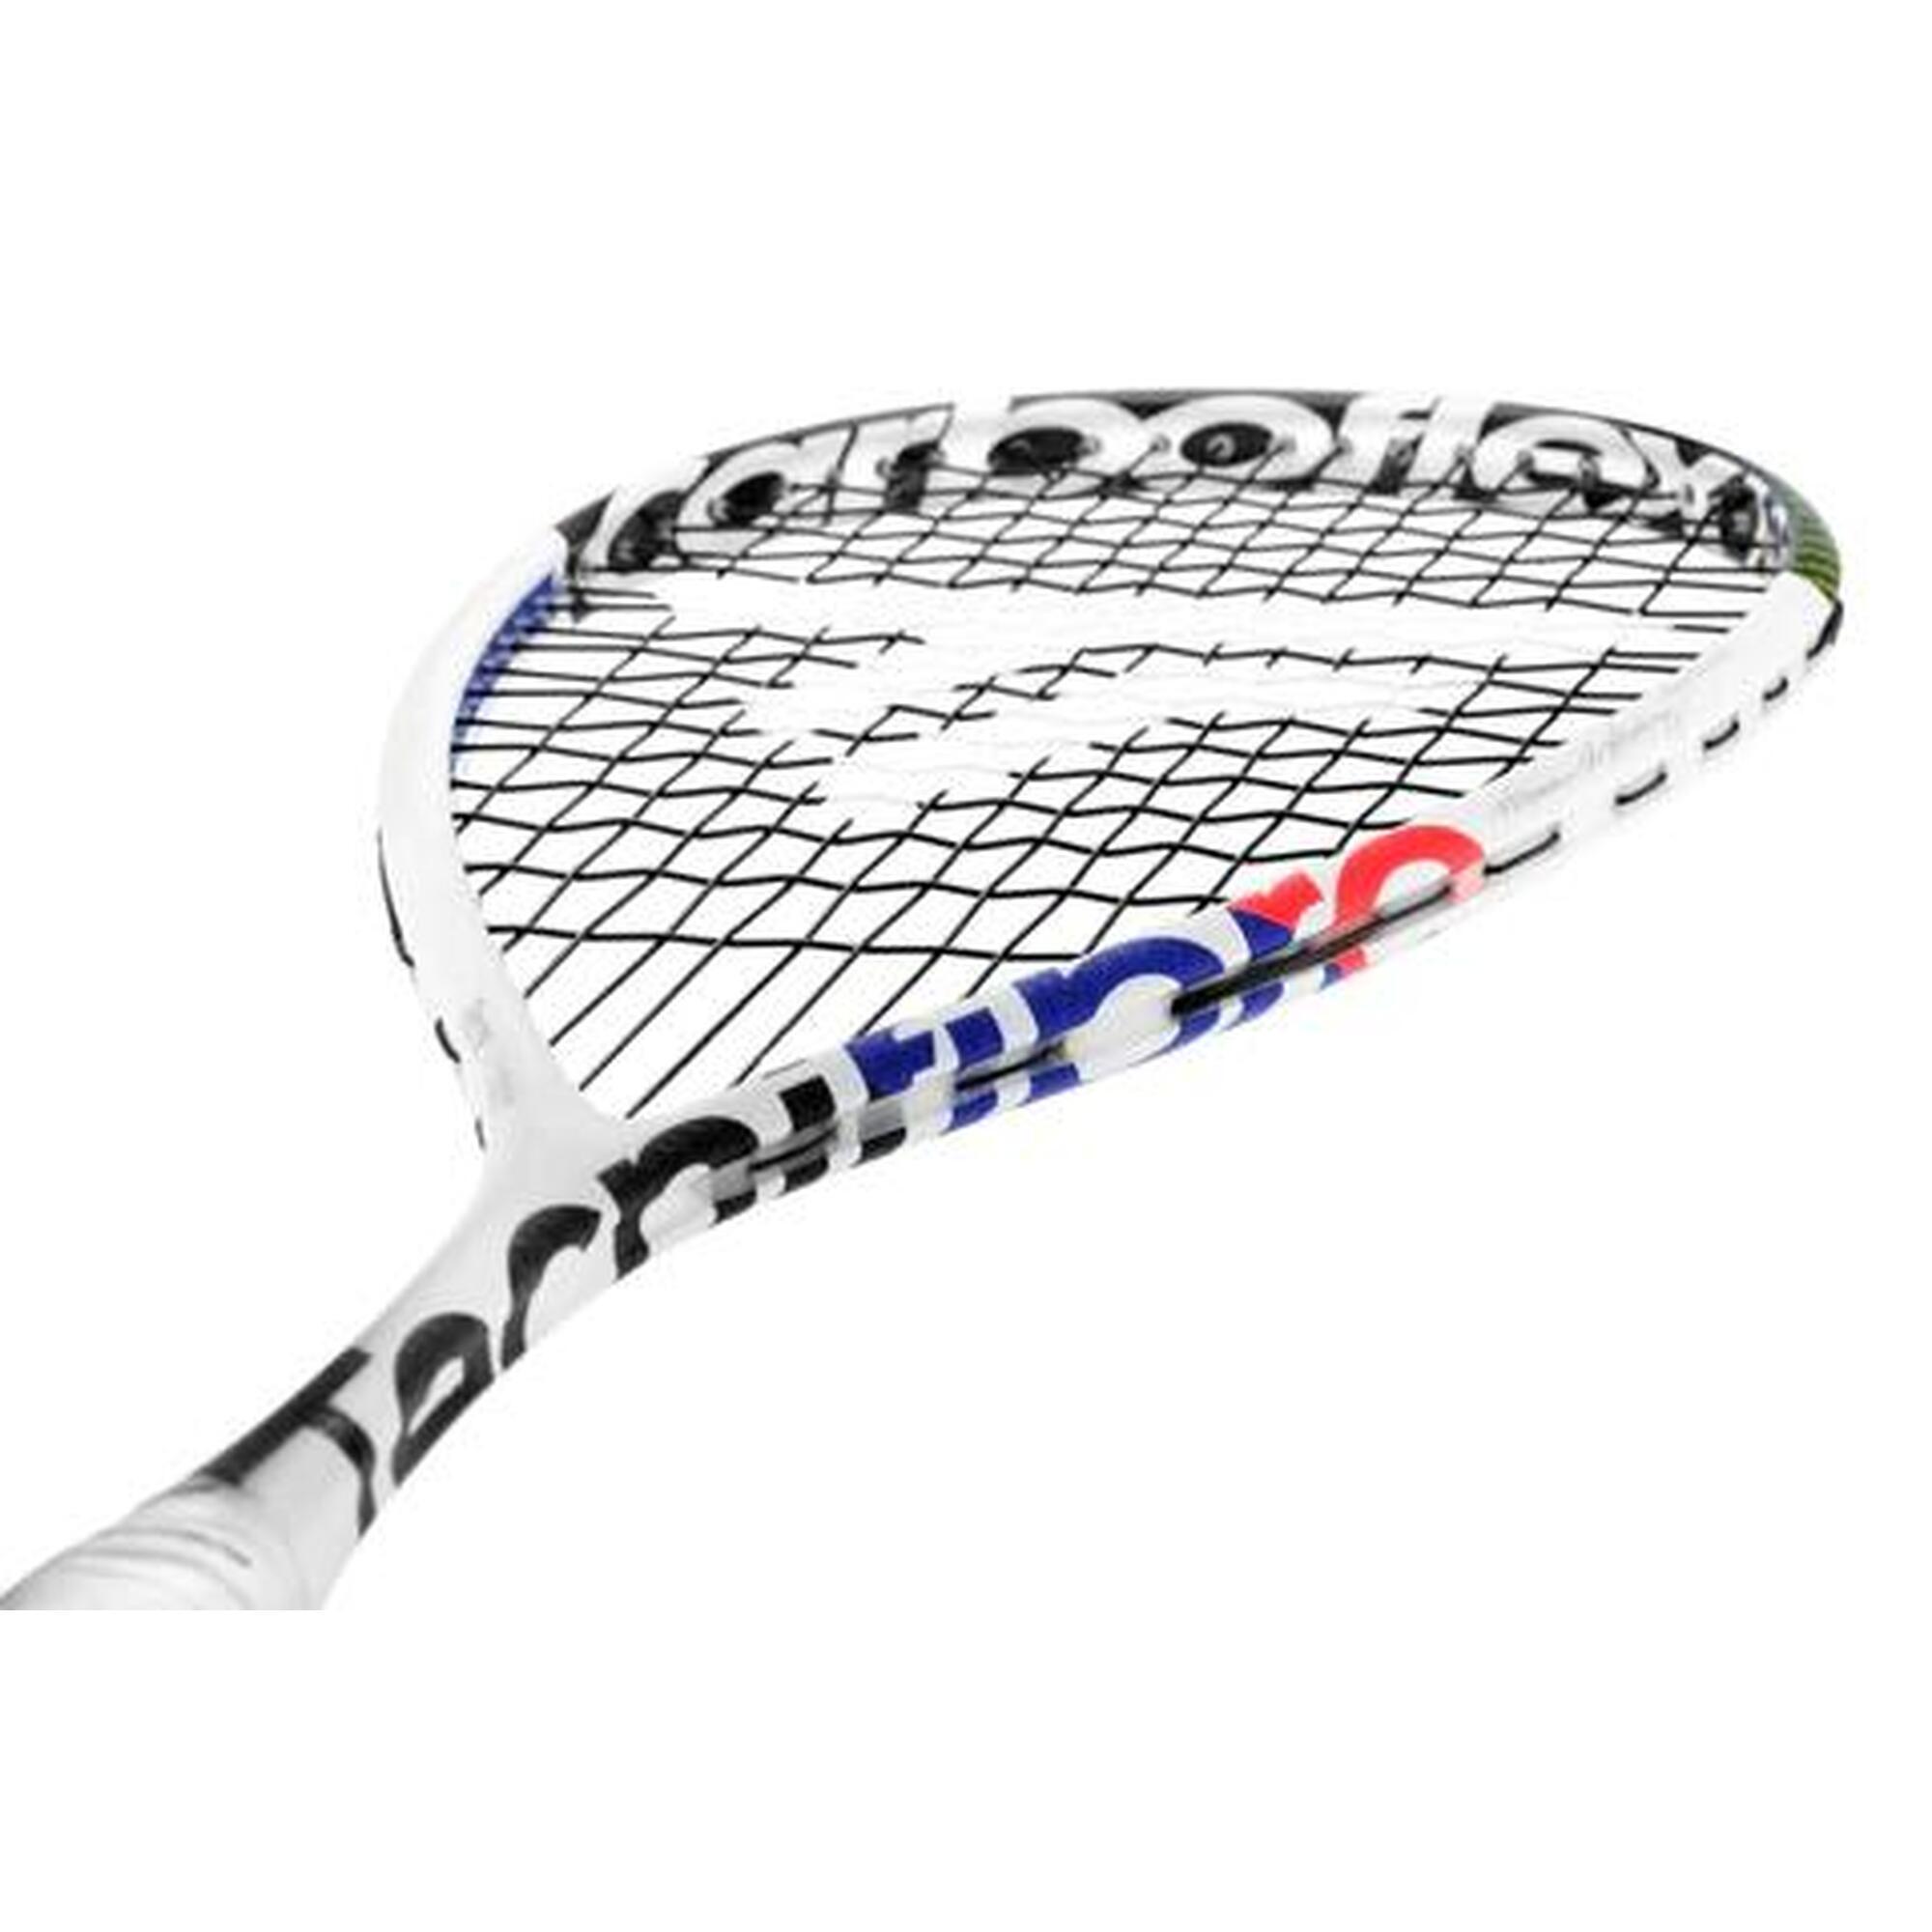 Carboflex X Top 125 Unisex Carbon Fiber Junior Squash Racket - White